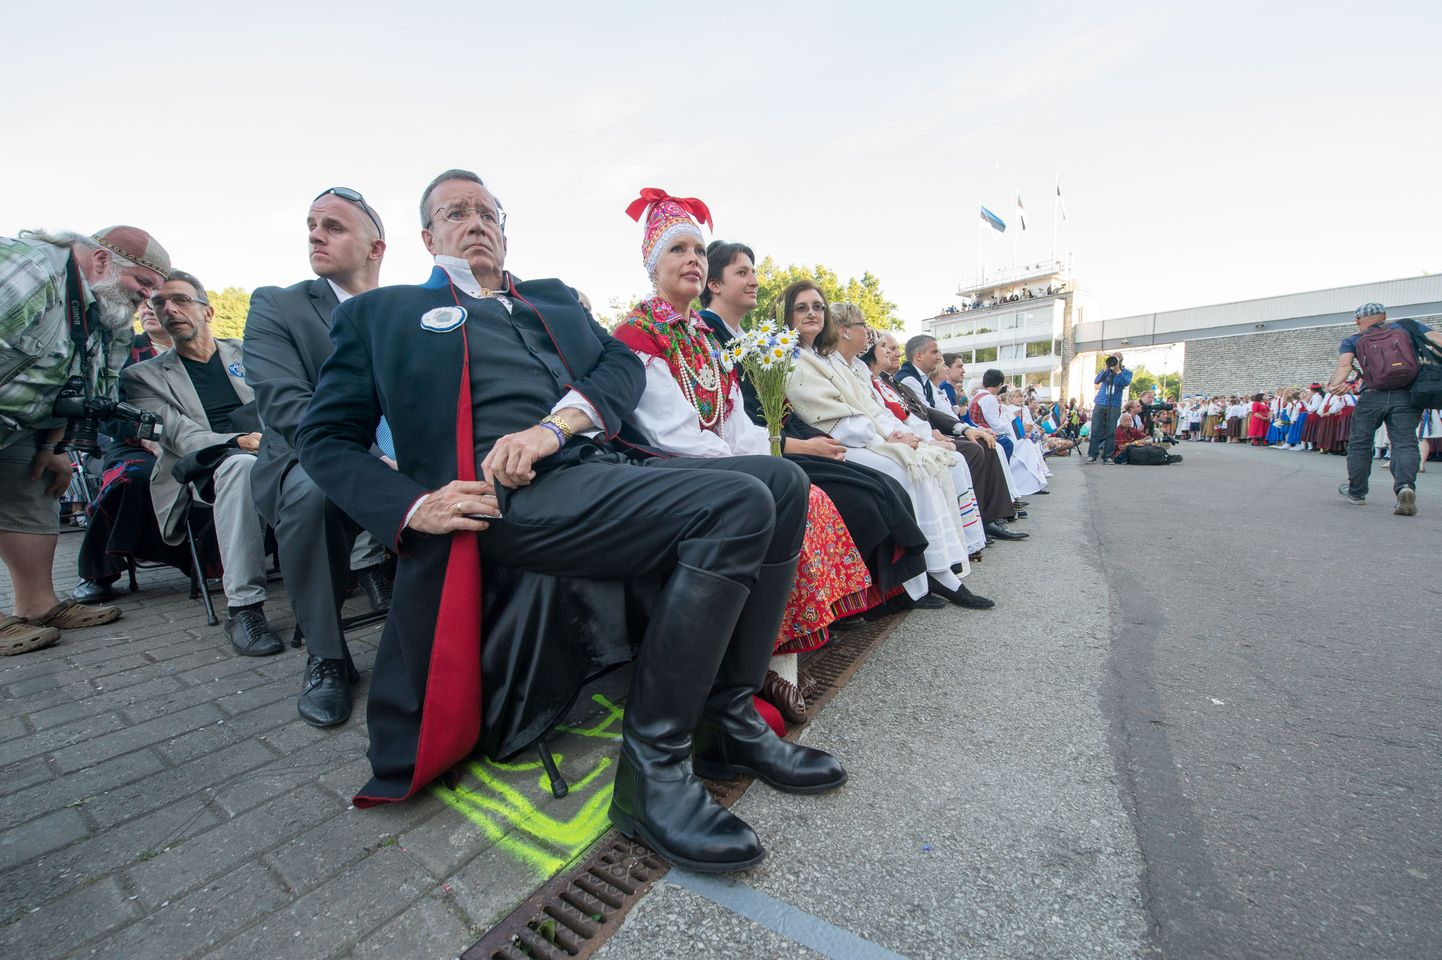 В черном национальном костюме с кровавым подбоем и кавалерийских сапогах сидел на певческом празднике президент эстонский Ильвес.